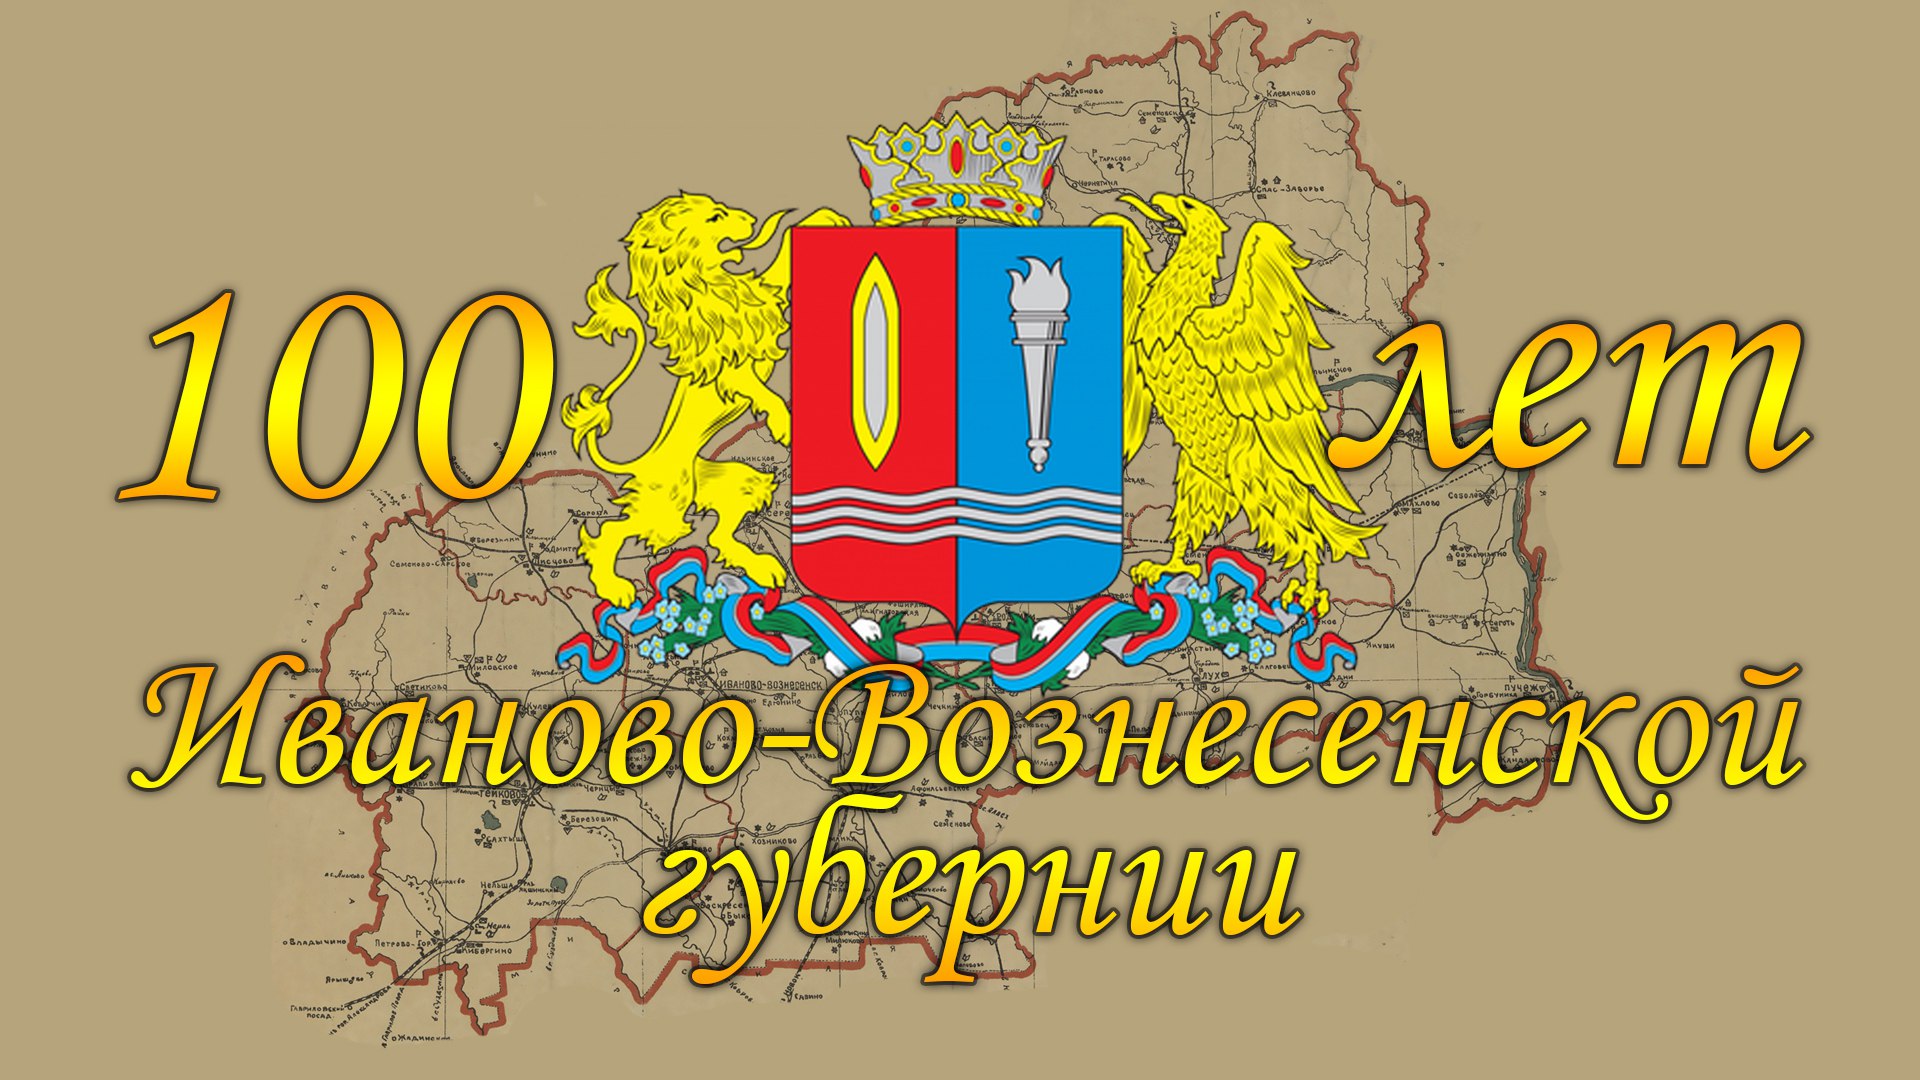 Иваново-Вознесенская Губерния